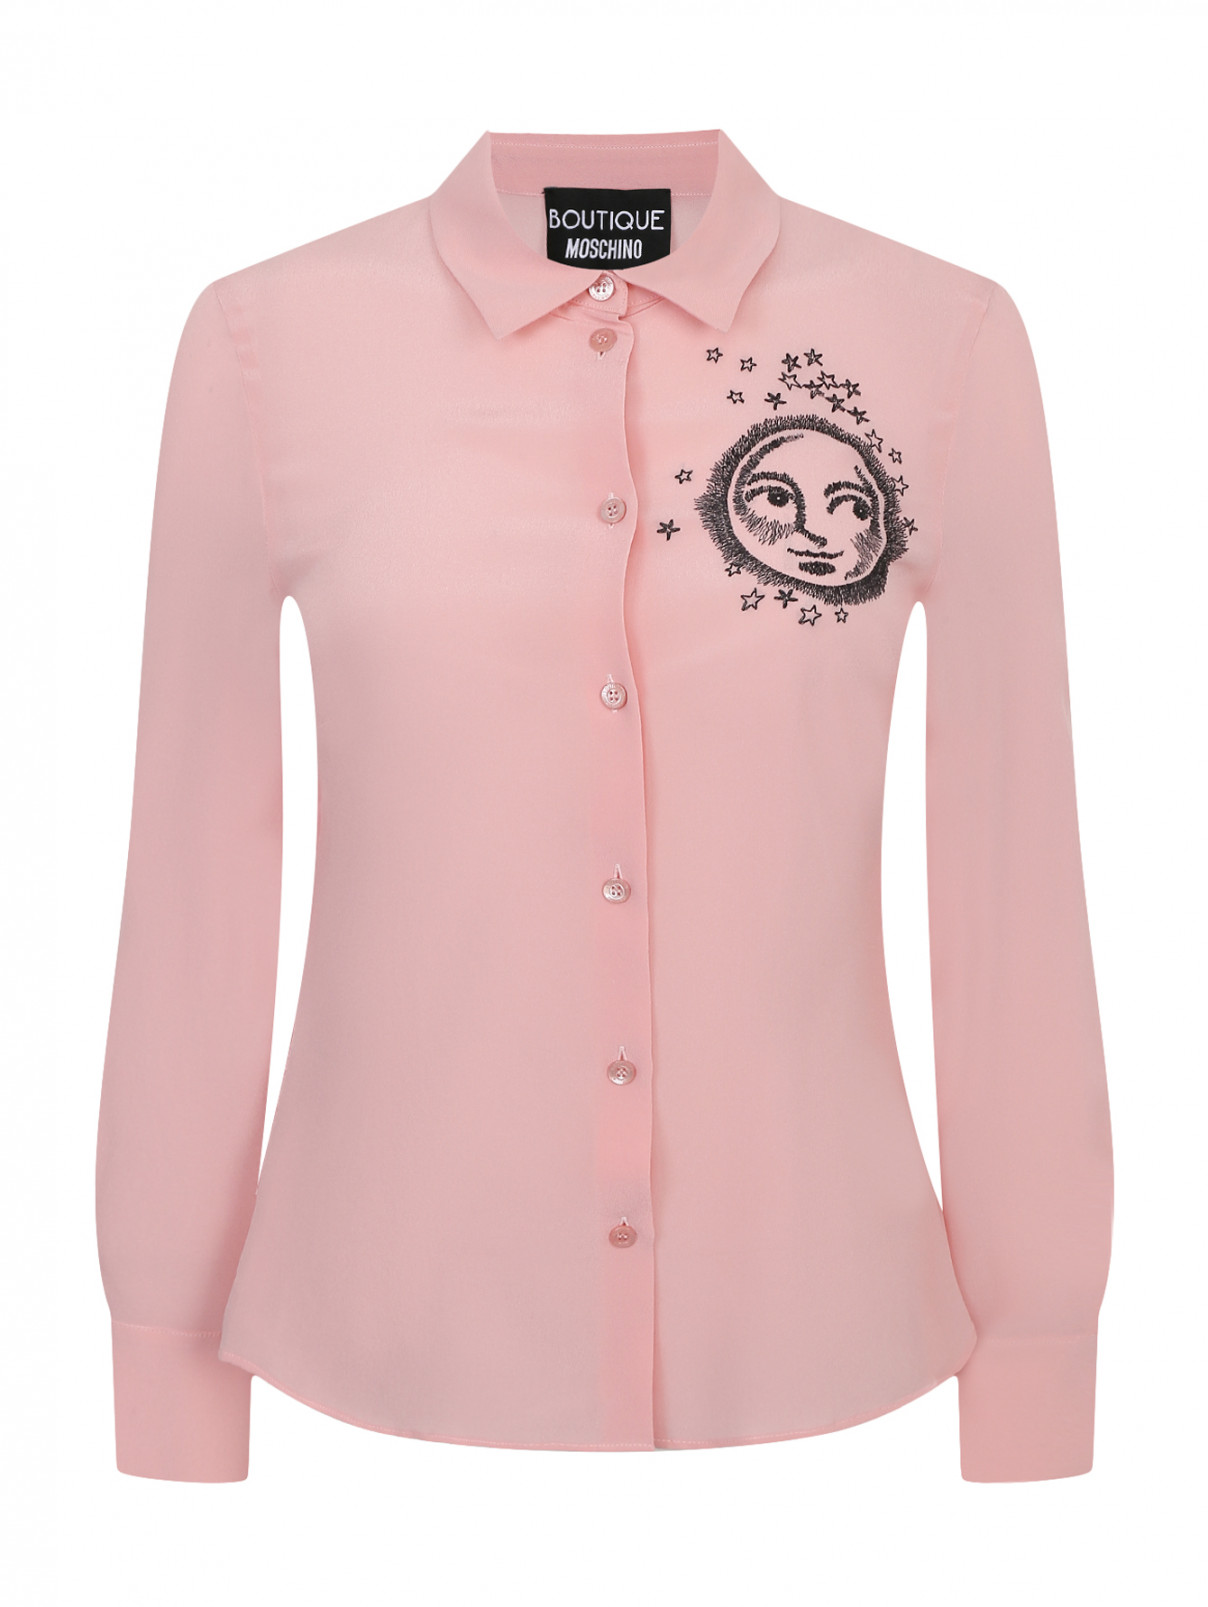 Блуза из шелка с узором Moschino Boutique  –  Общий вид  – Цвет:  Розовый